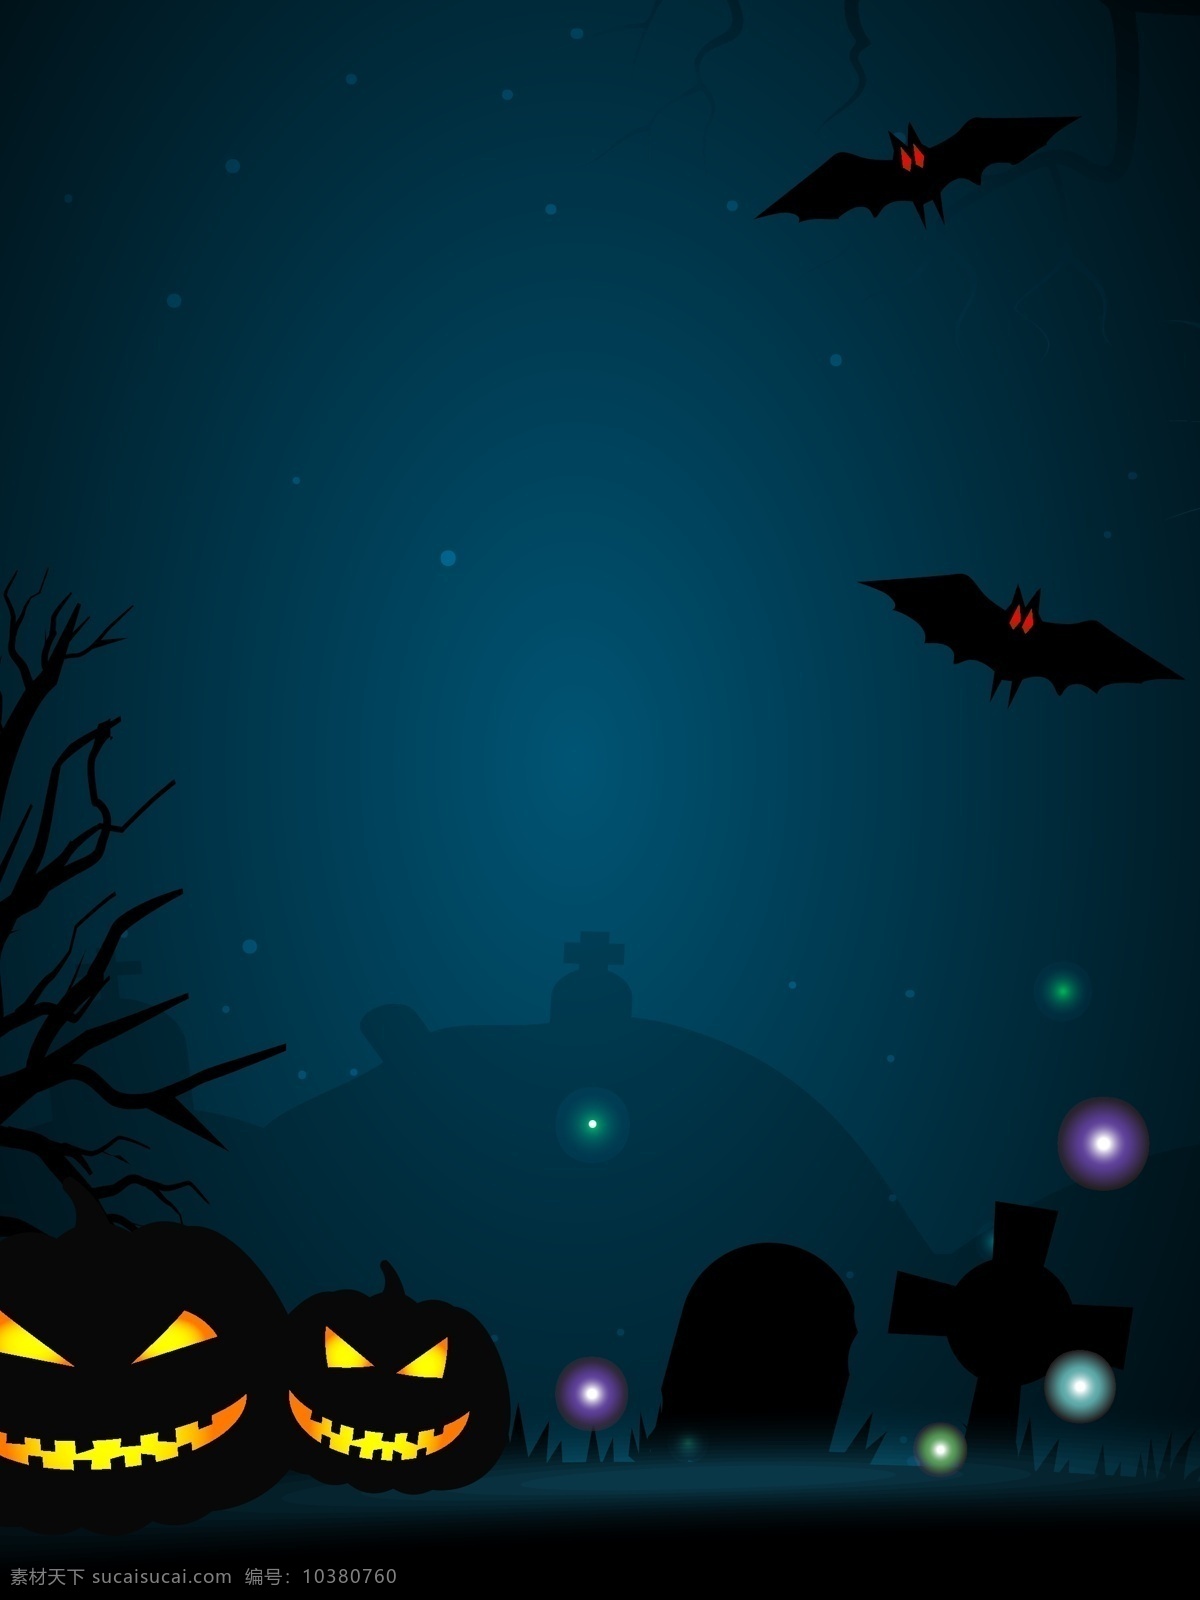 万圣节 卡通 女巫 墓地 元素 背景 蝙蝠 南瓜 黑夜 广告背景